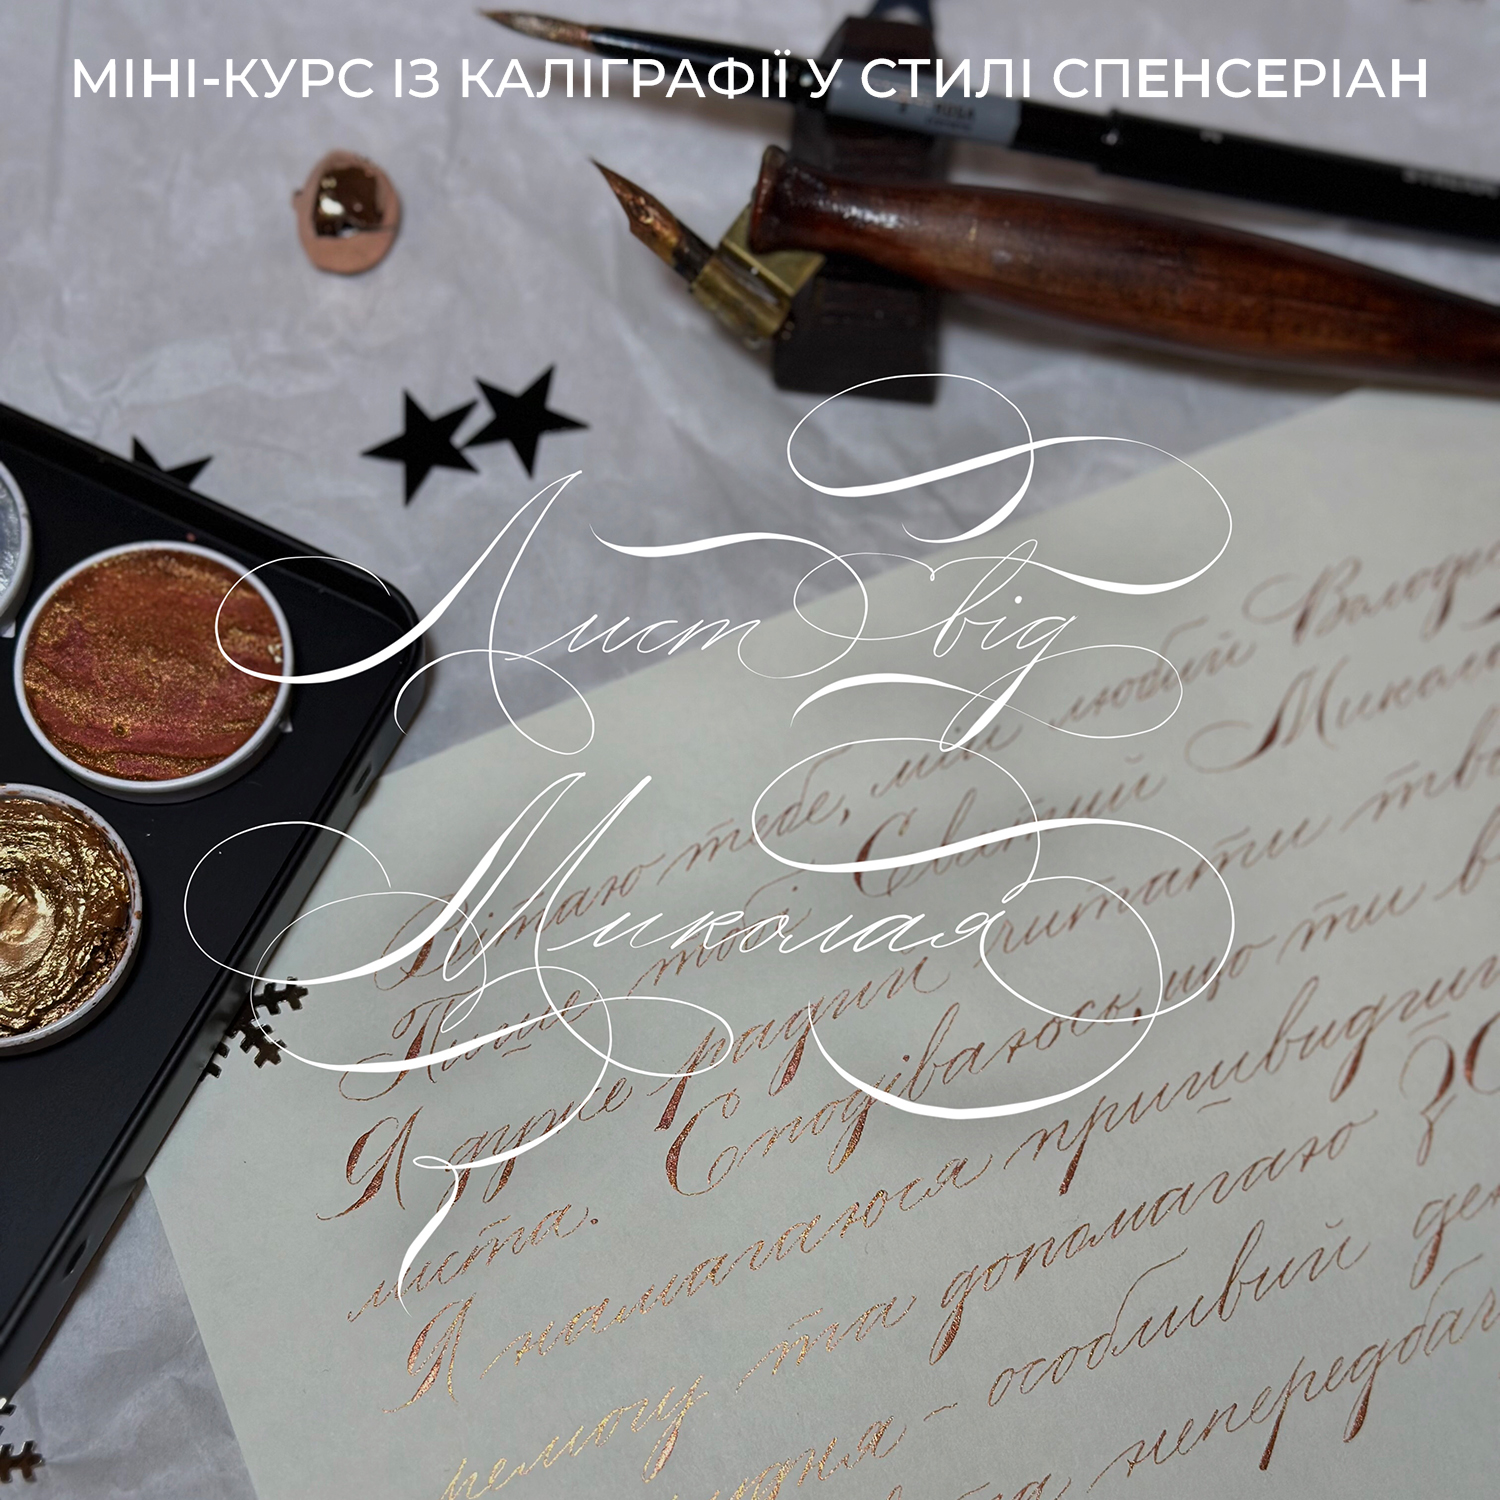 Міні-курс “Спенсеріан: лист від Миколая” (укр)